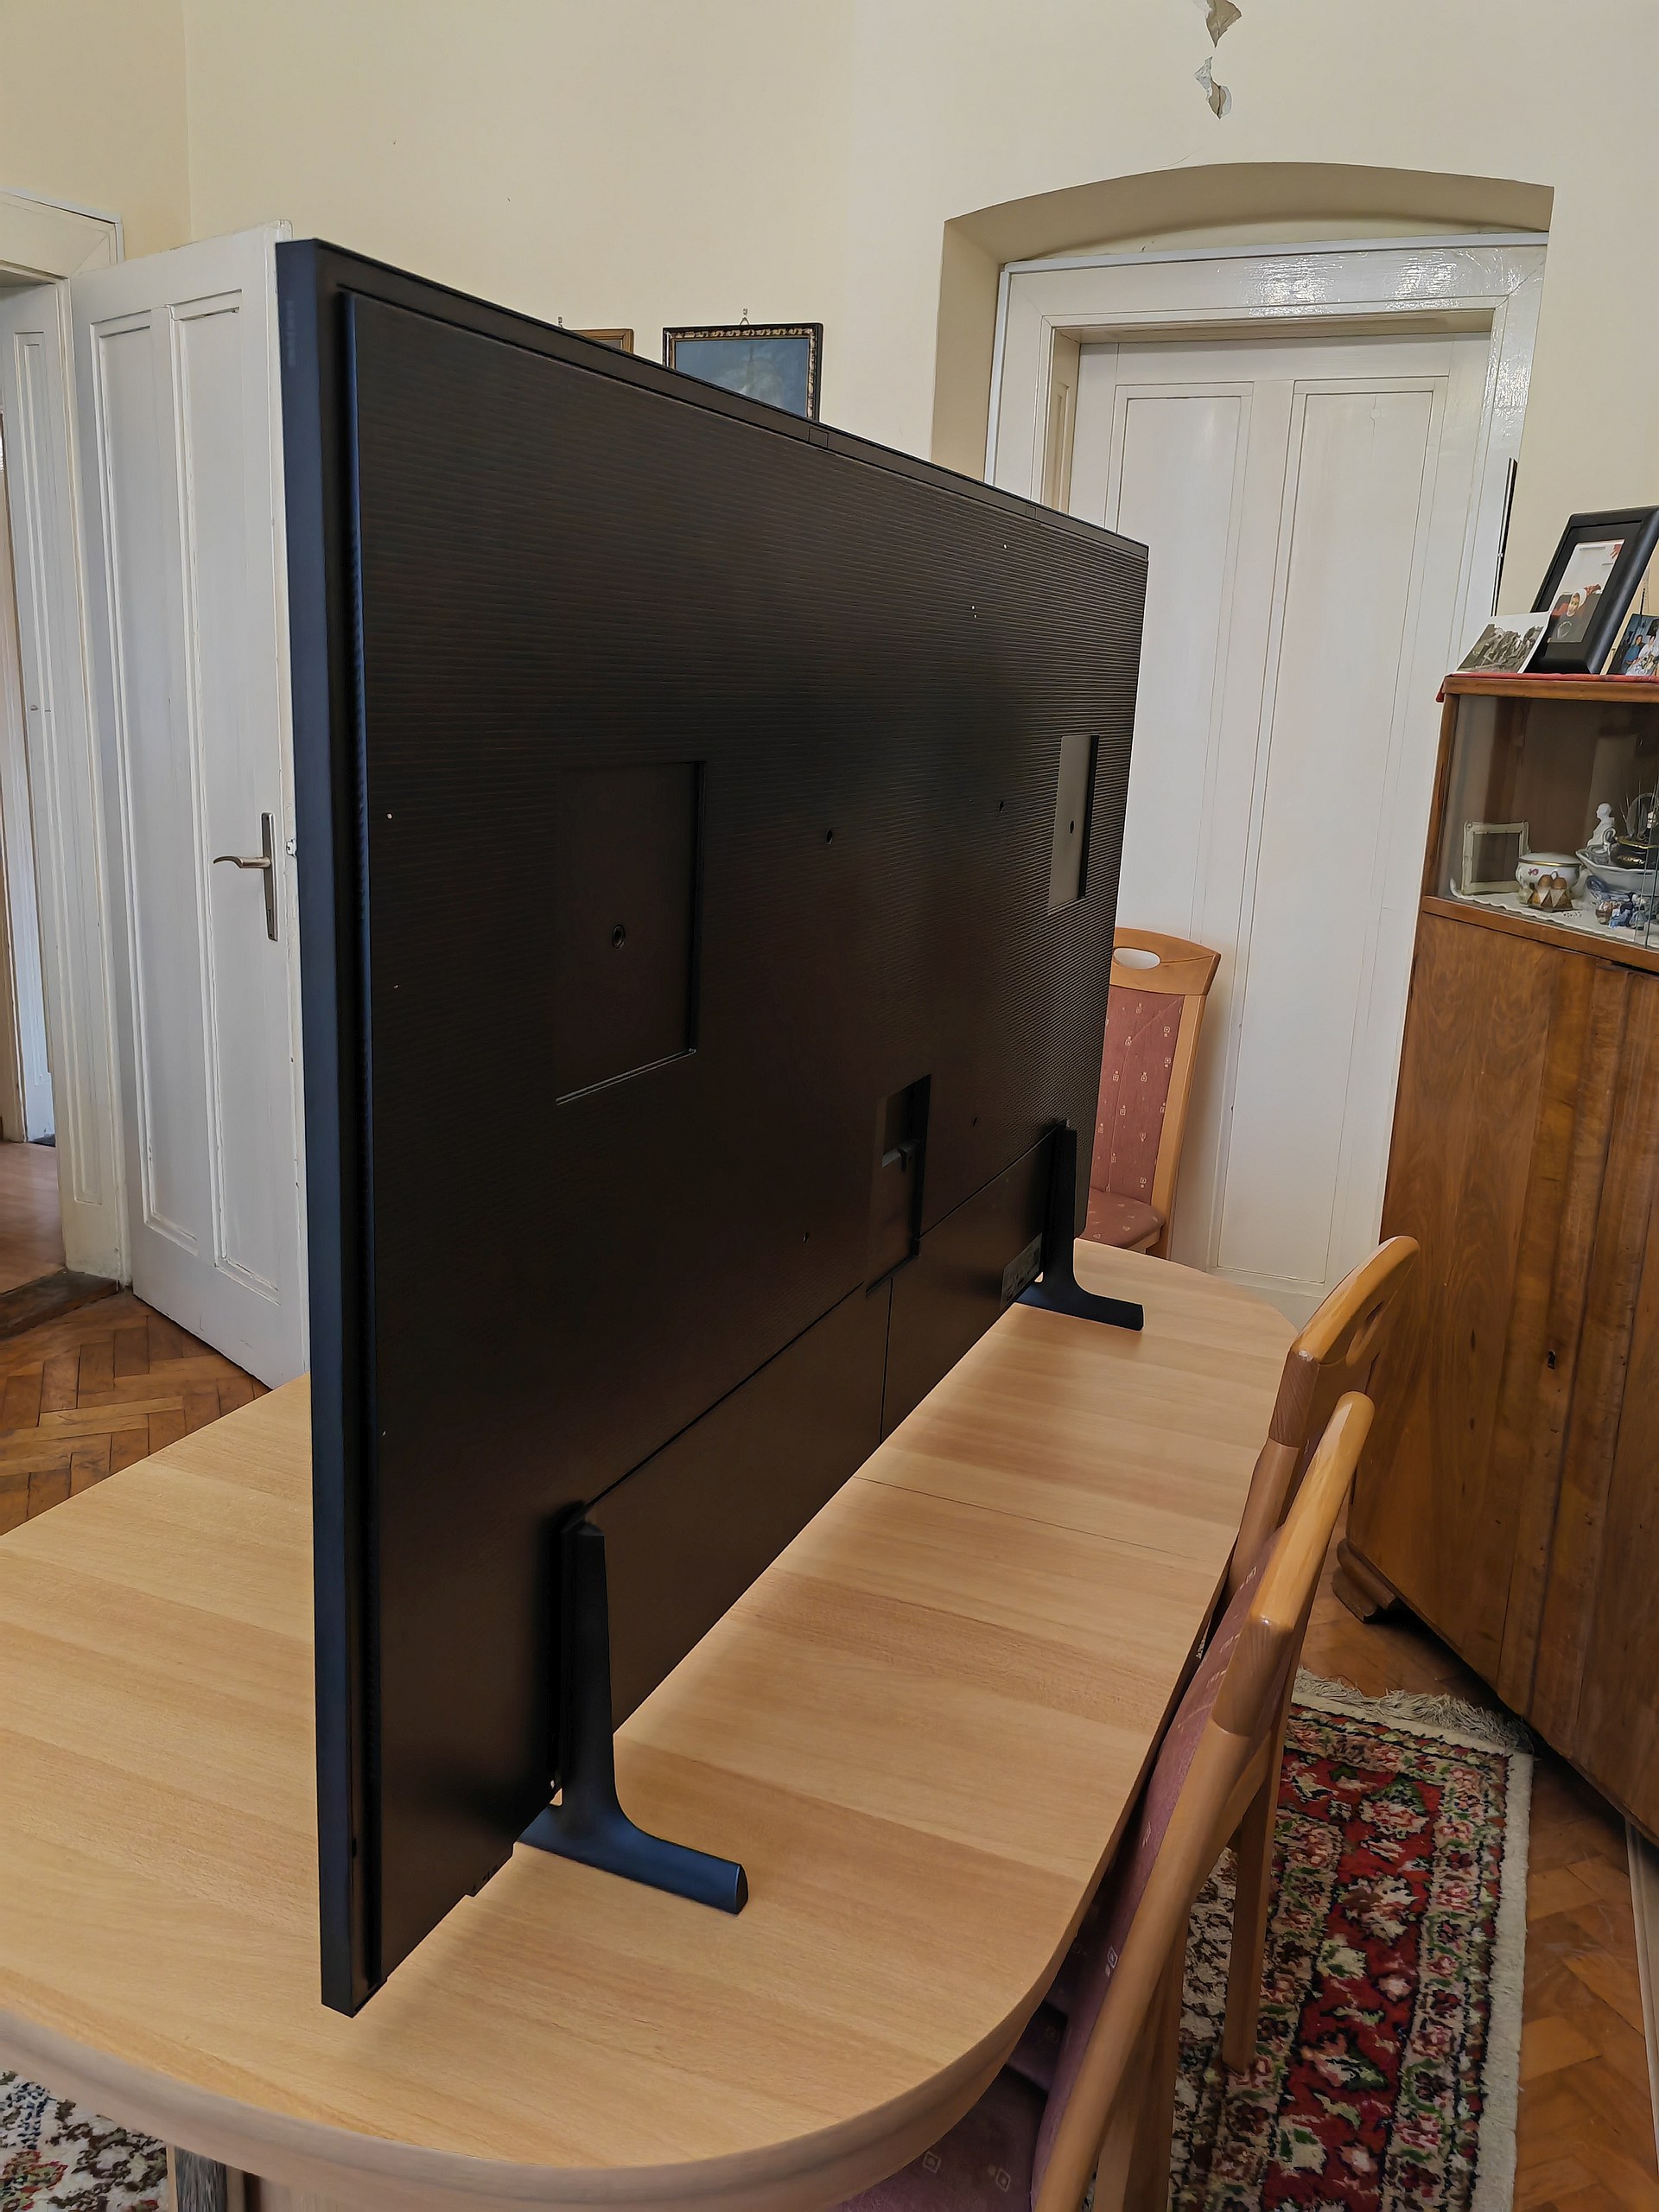 The Frame TV je ravnomjerno tanak po cijeloj površini